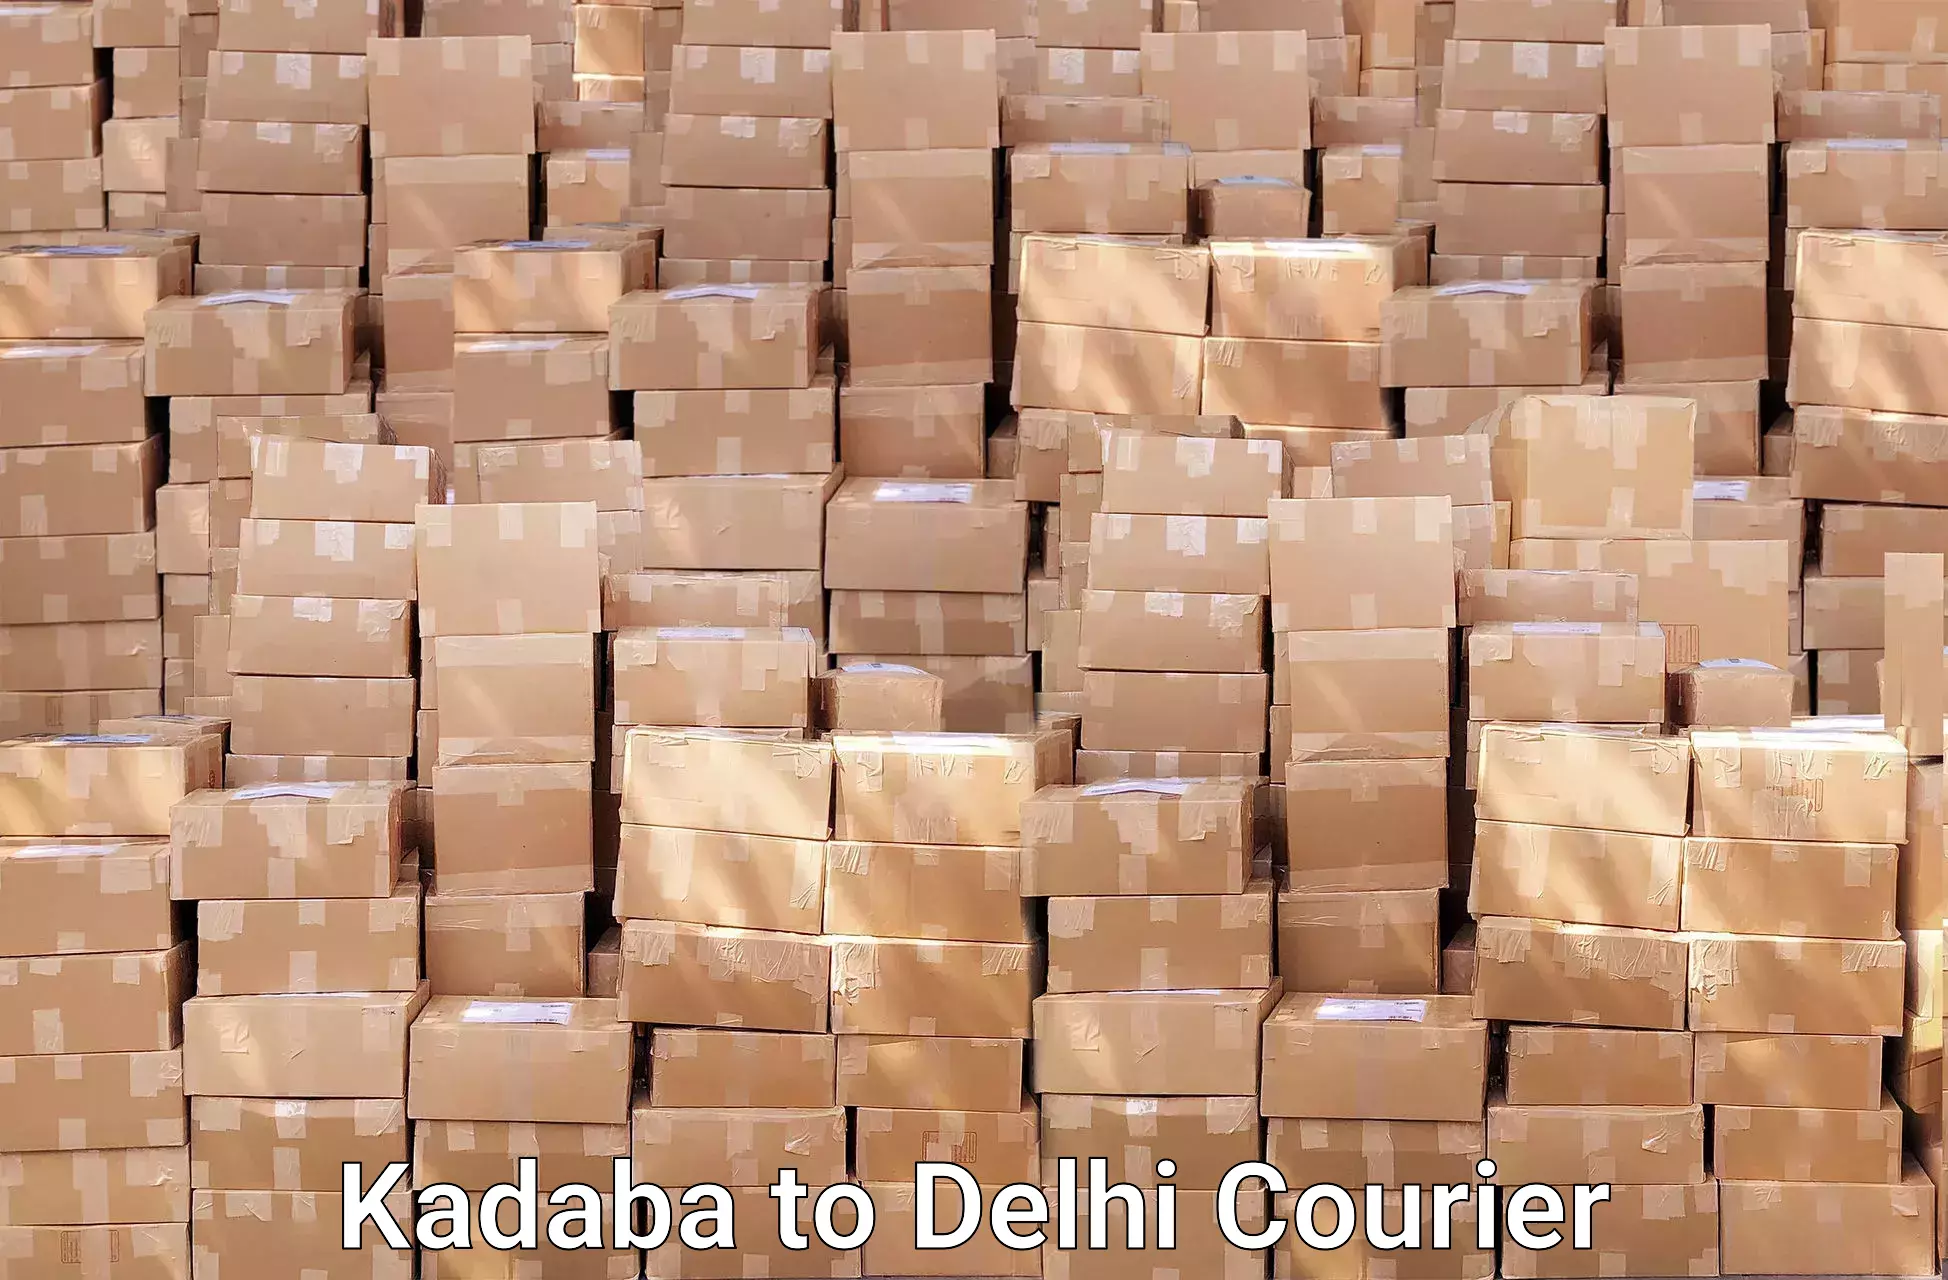 Skilled furniture transport Kadaba to Lodhi Road